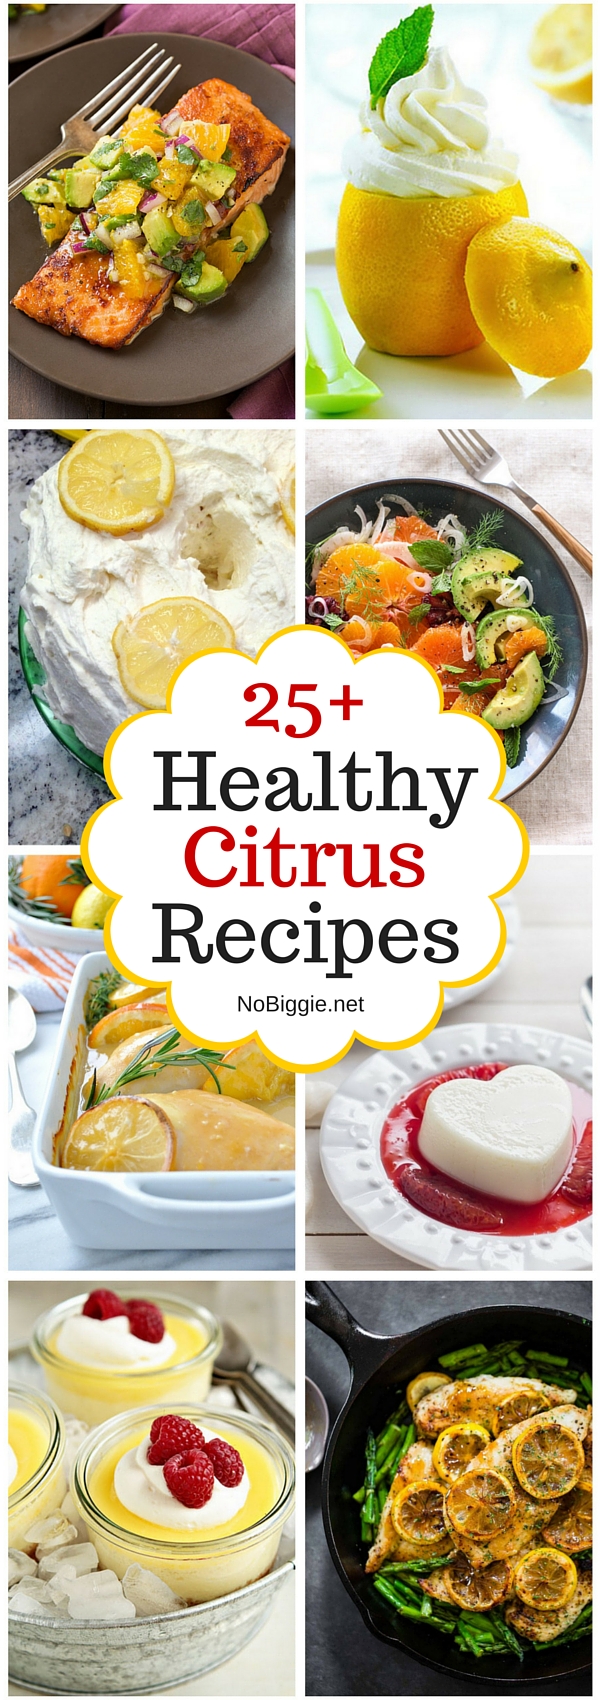 25+ delicious Citrus Recipes